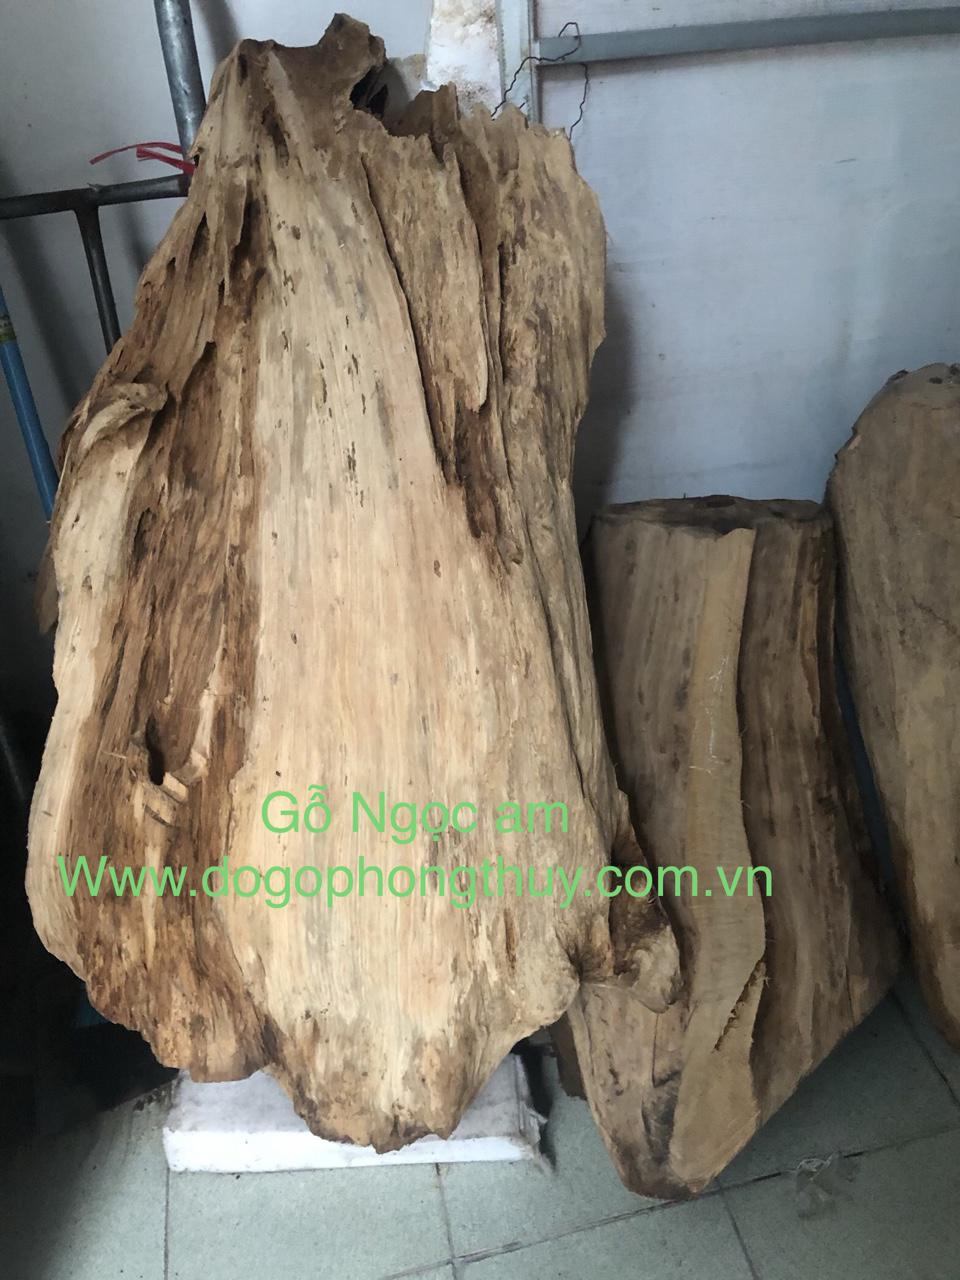 Loại gỗ quý hiếm bậc nhất mang tên gỗ ngọc am.